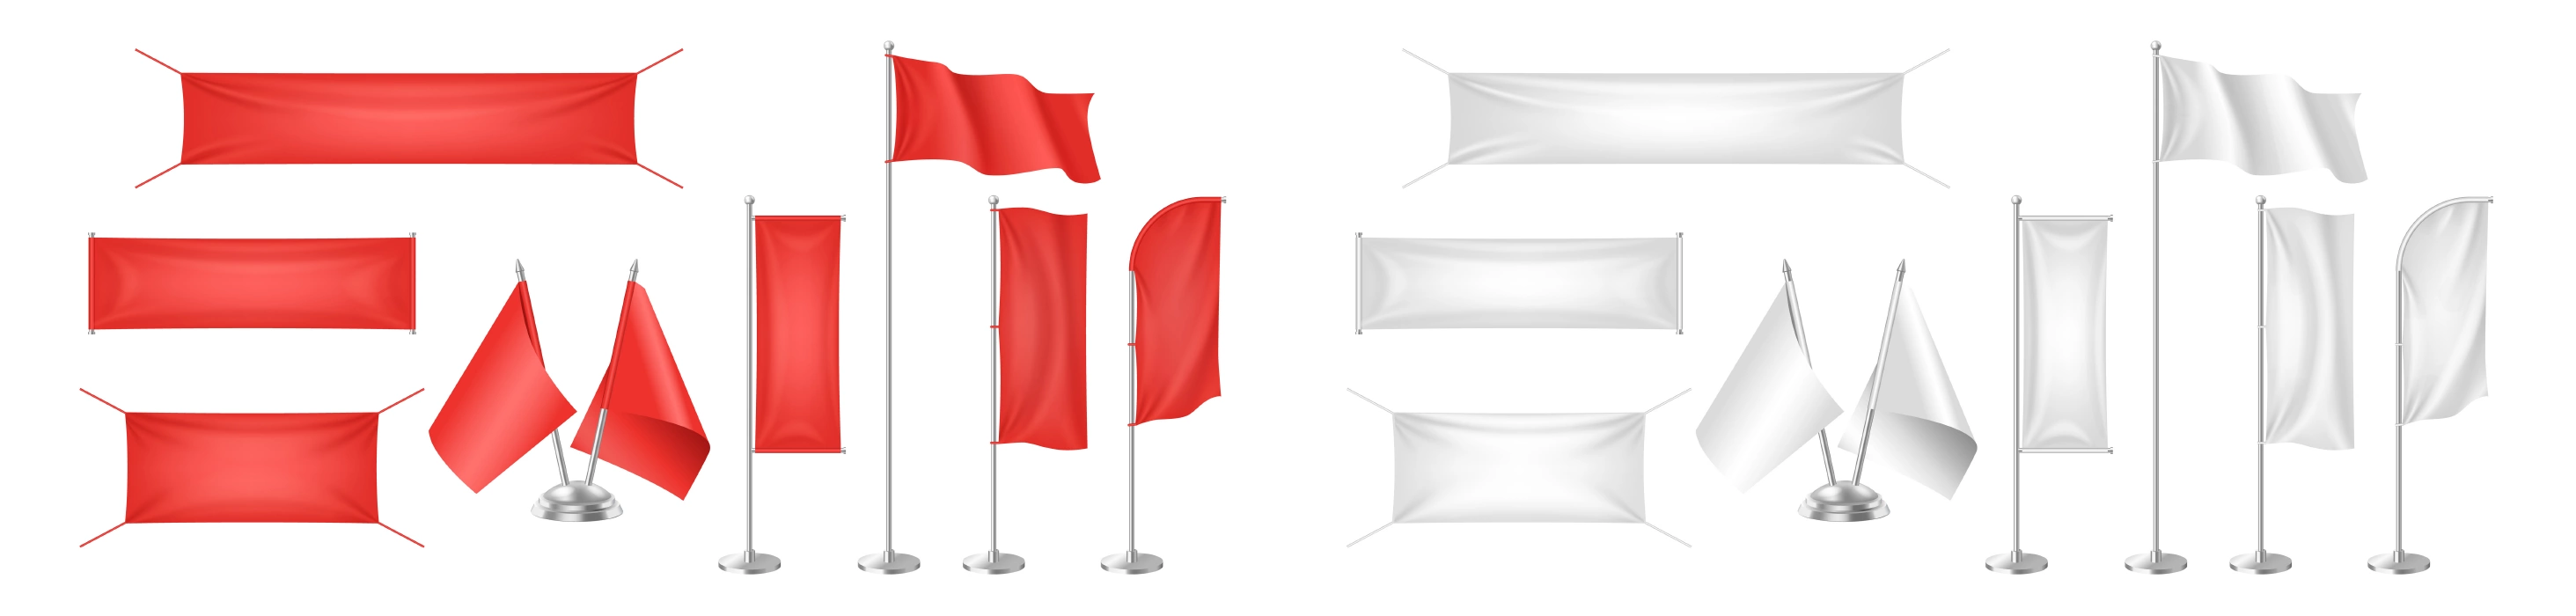 دانلود وکتور مجموعه پرچم های سفید و قرمز